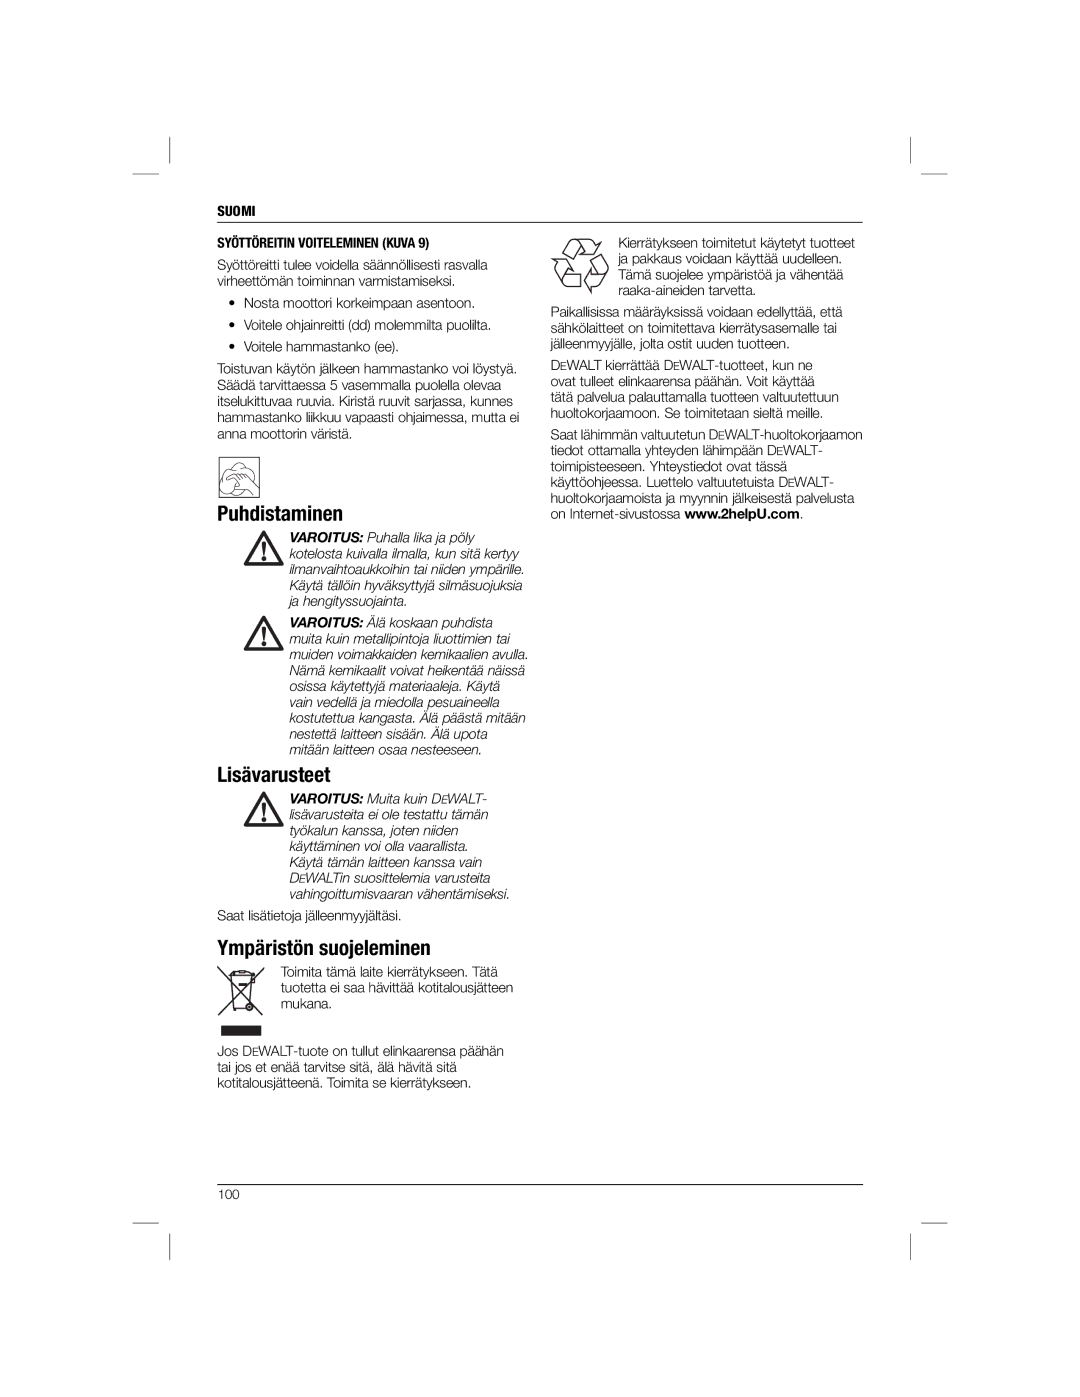 DeWalt DWE1622K manual Puhdistaminen, Lisävarusteet, Ympäristön suojeleminen, Suomi Syöttöreitin Voiteleminen Kuva 